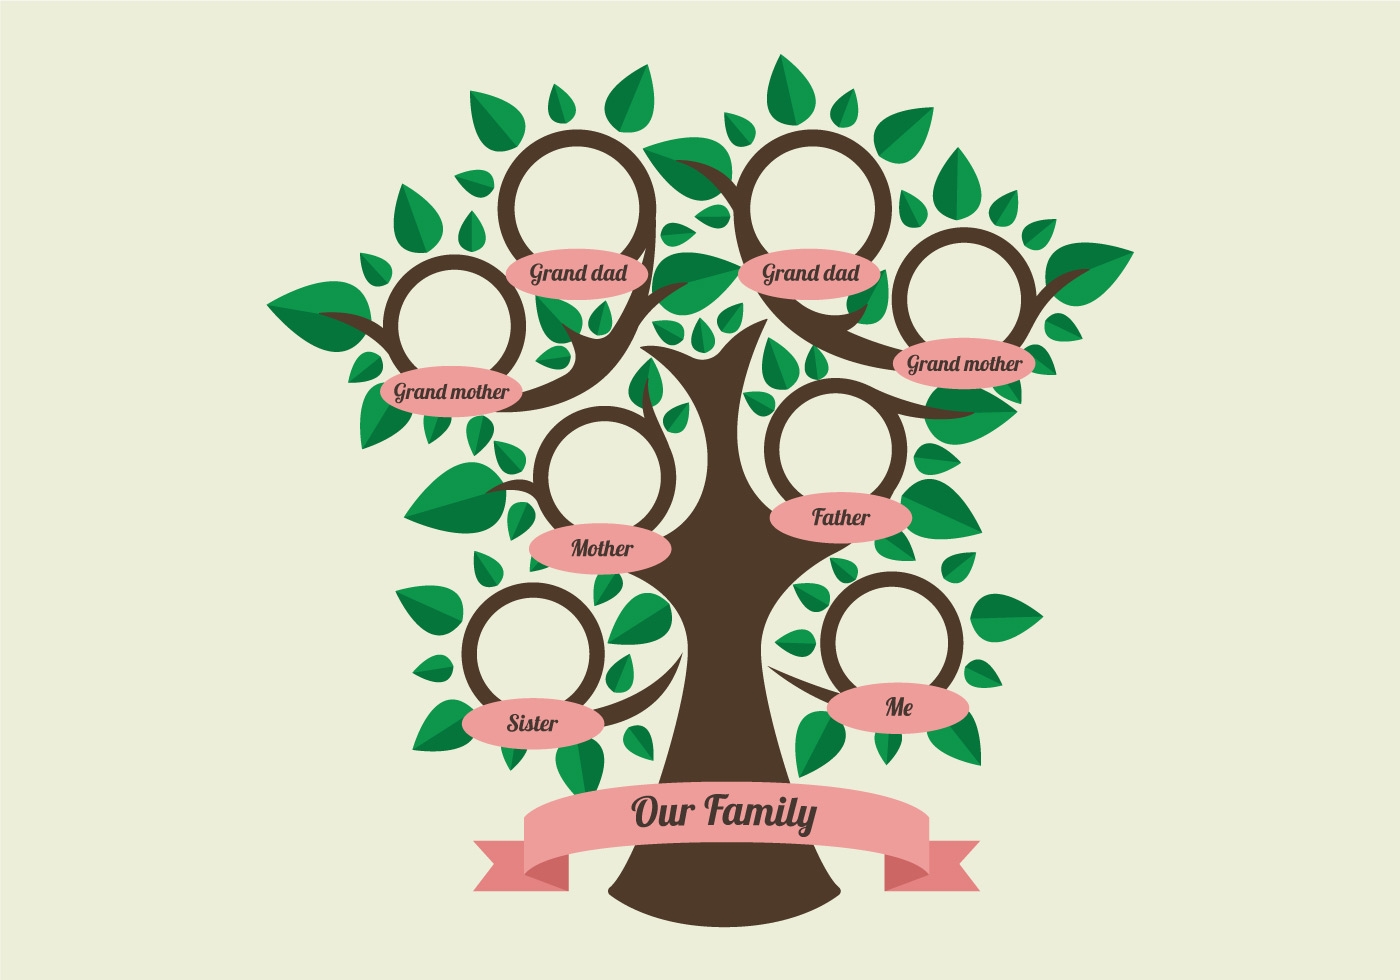 Бесплатное генеалогическое древо онлайн — сервис Famiry